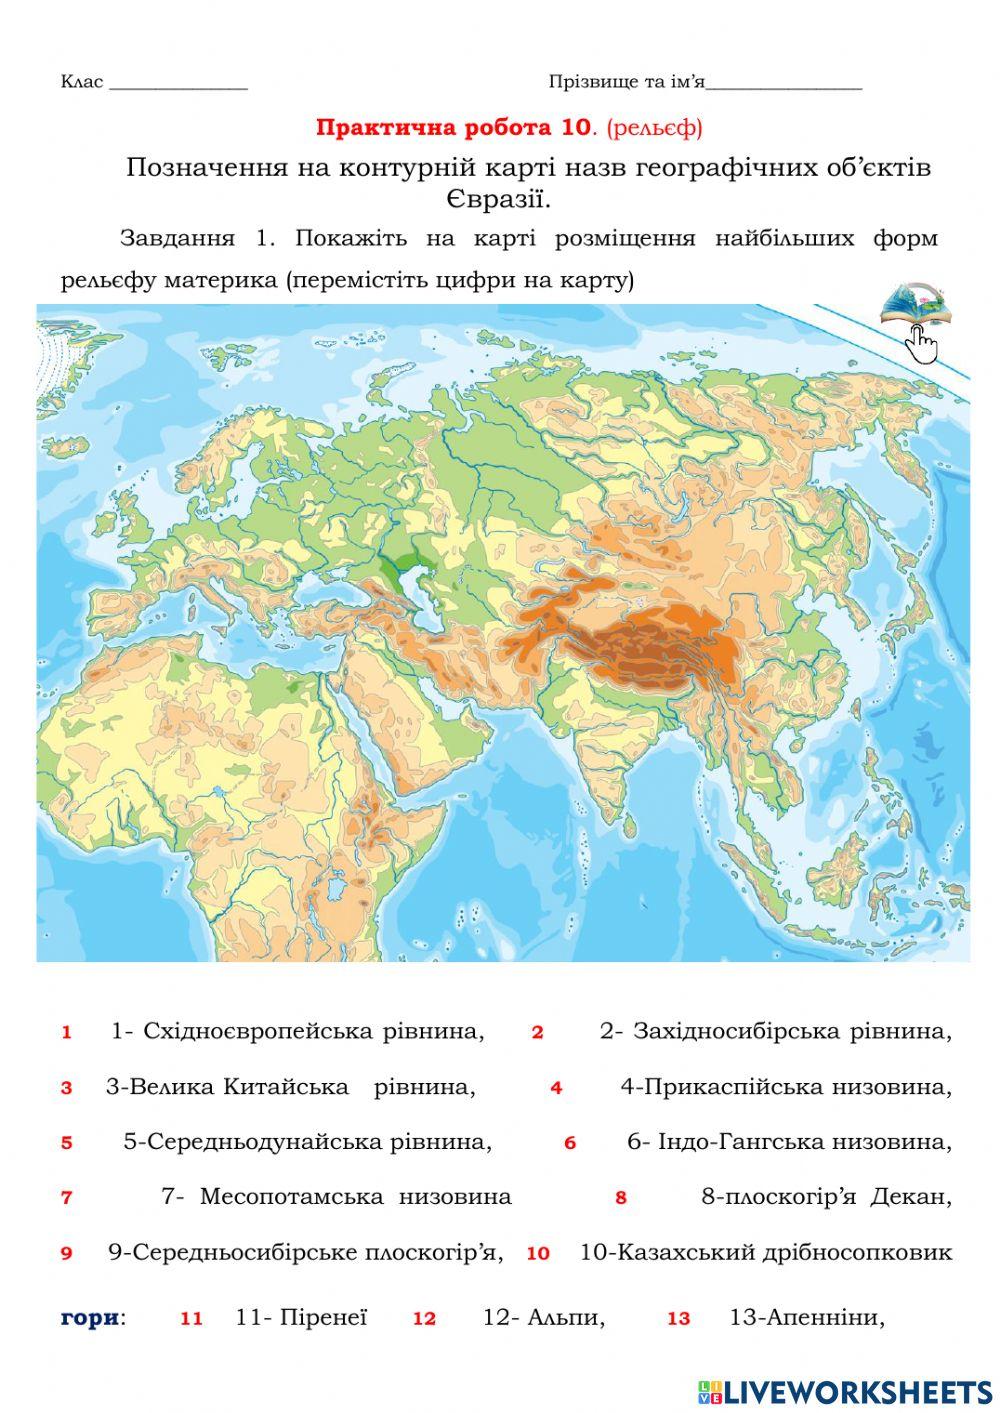 Практична робота 10. (рельєф) Позначення на контурній карті назв географічних об’єктів Євразії.